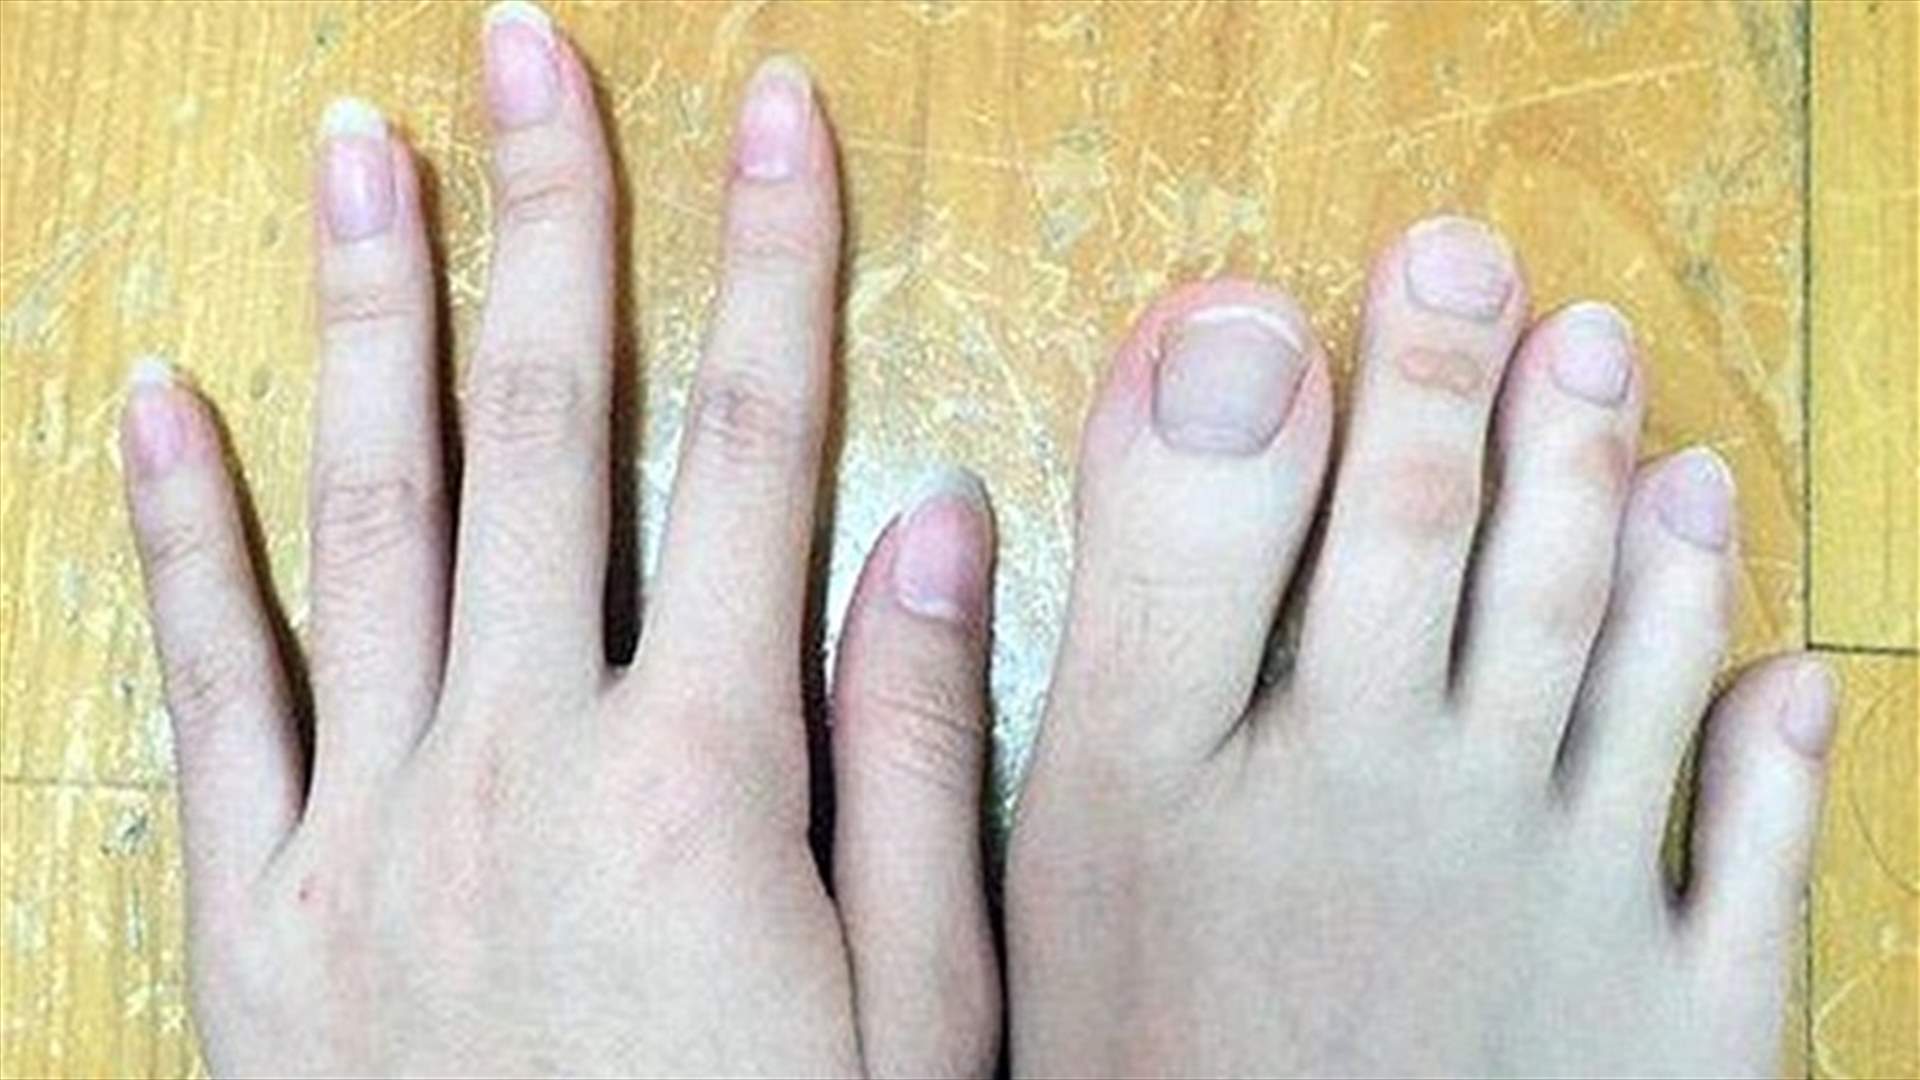 بالصور- لن تصدقوا.. أهذه أصابع قدمين أم يدين؟